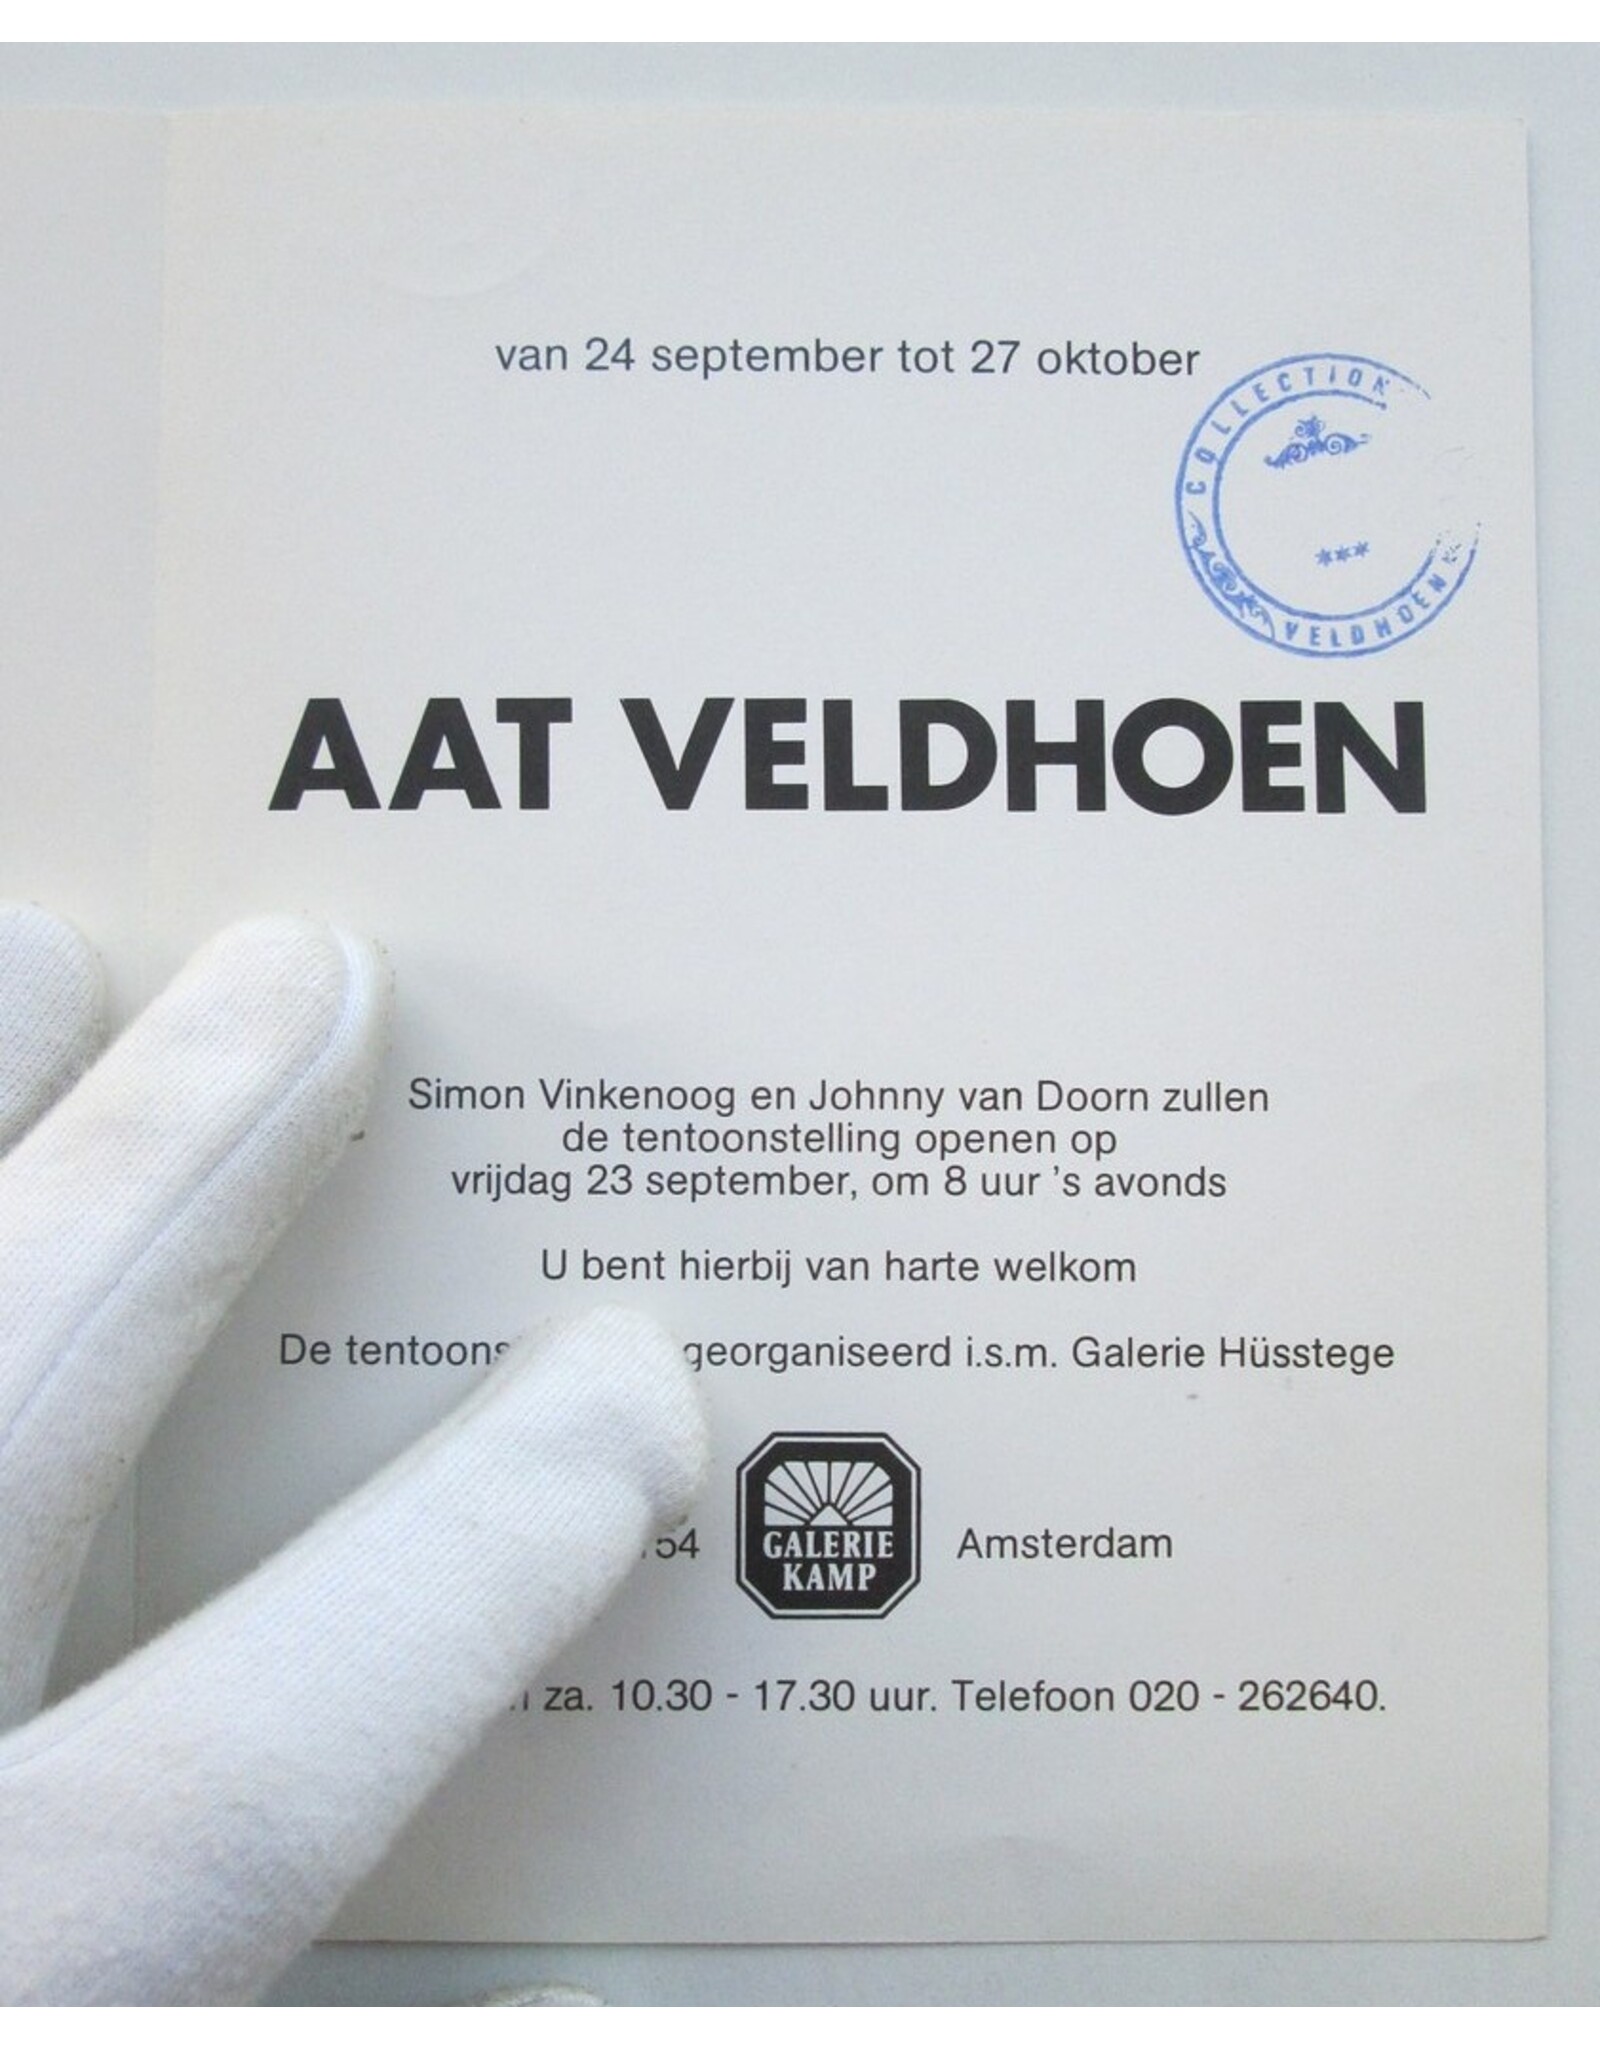 Simon Vinkenoog & Johnny van Doorn - Aat Veldhoen [Invitation]